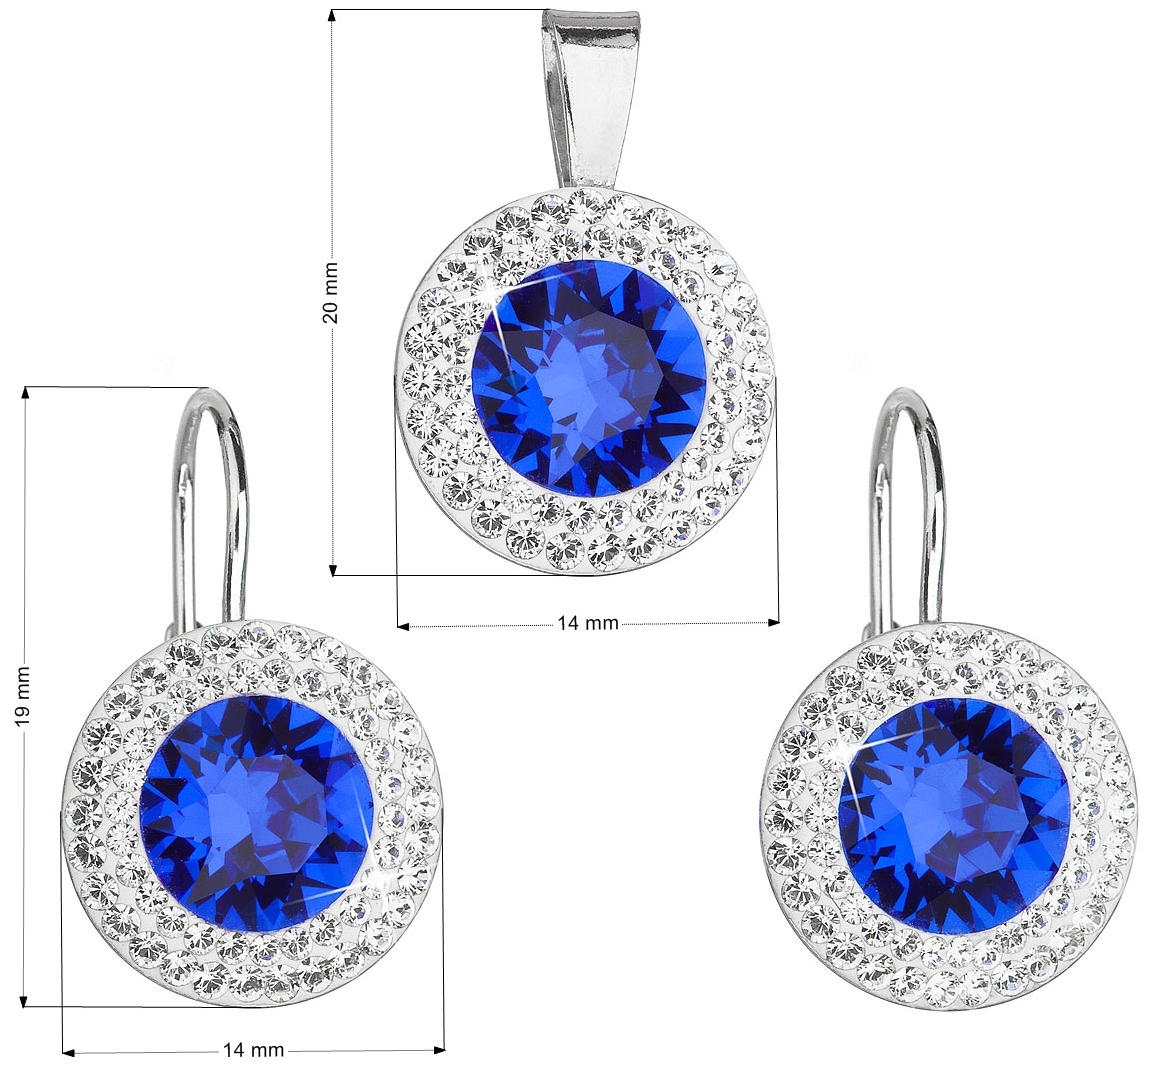 Sada šperkov s krištáľmi Swarovski náušnice a prívesok modré okrúhle 39107.3 majestic blue